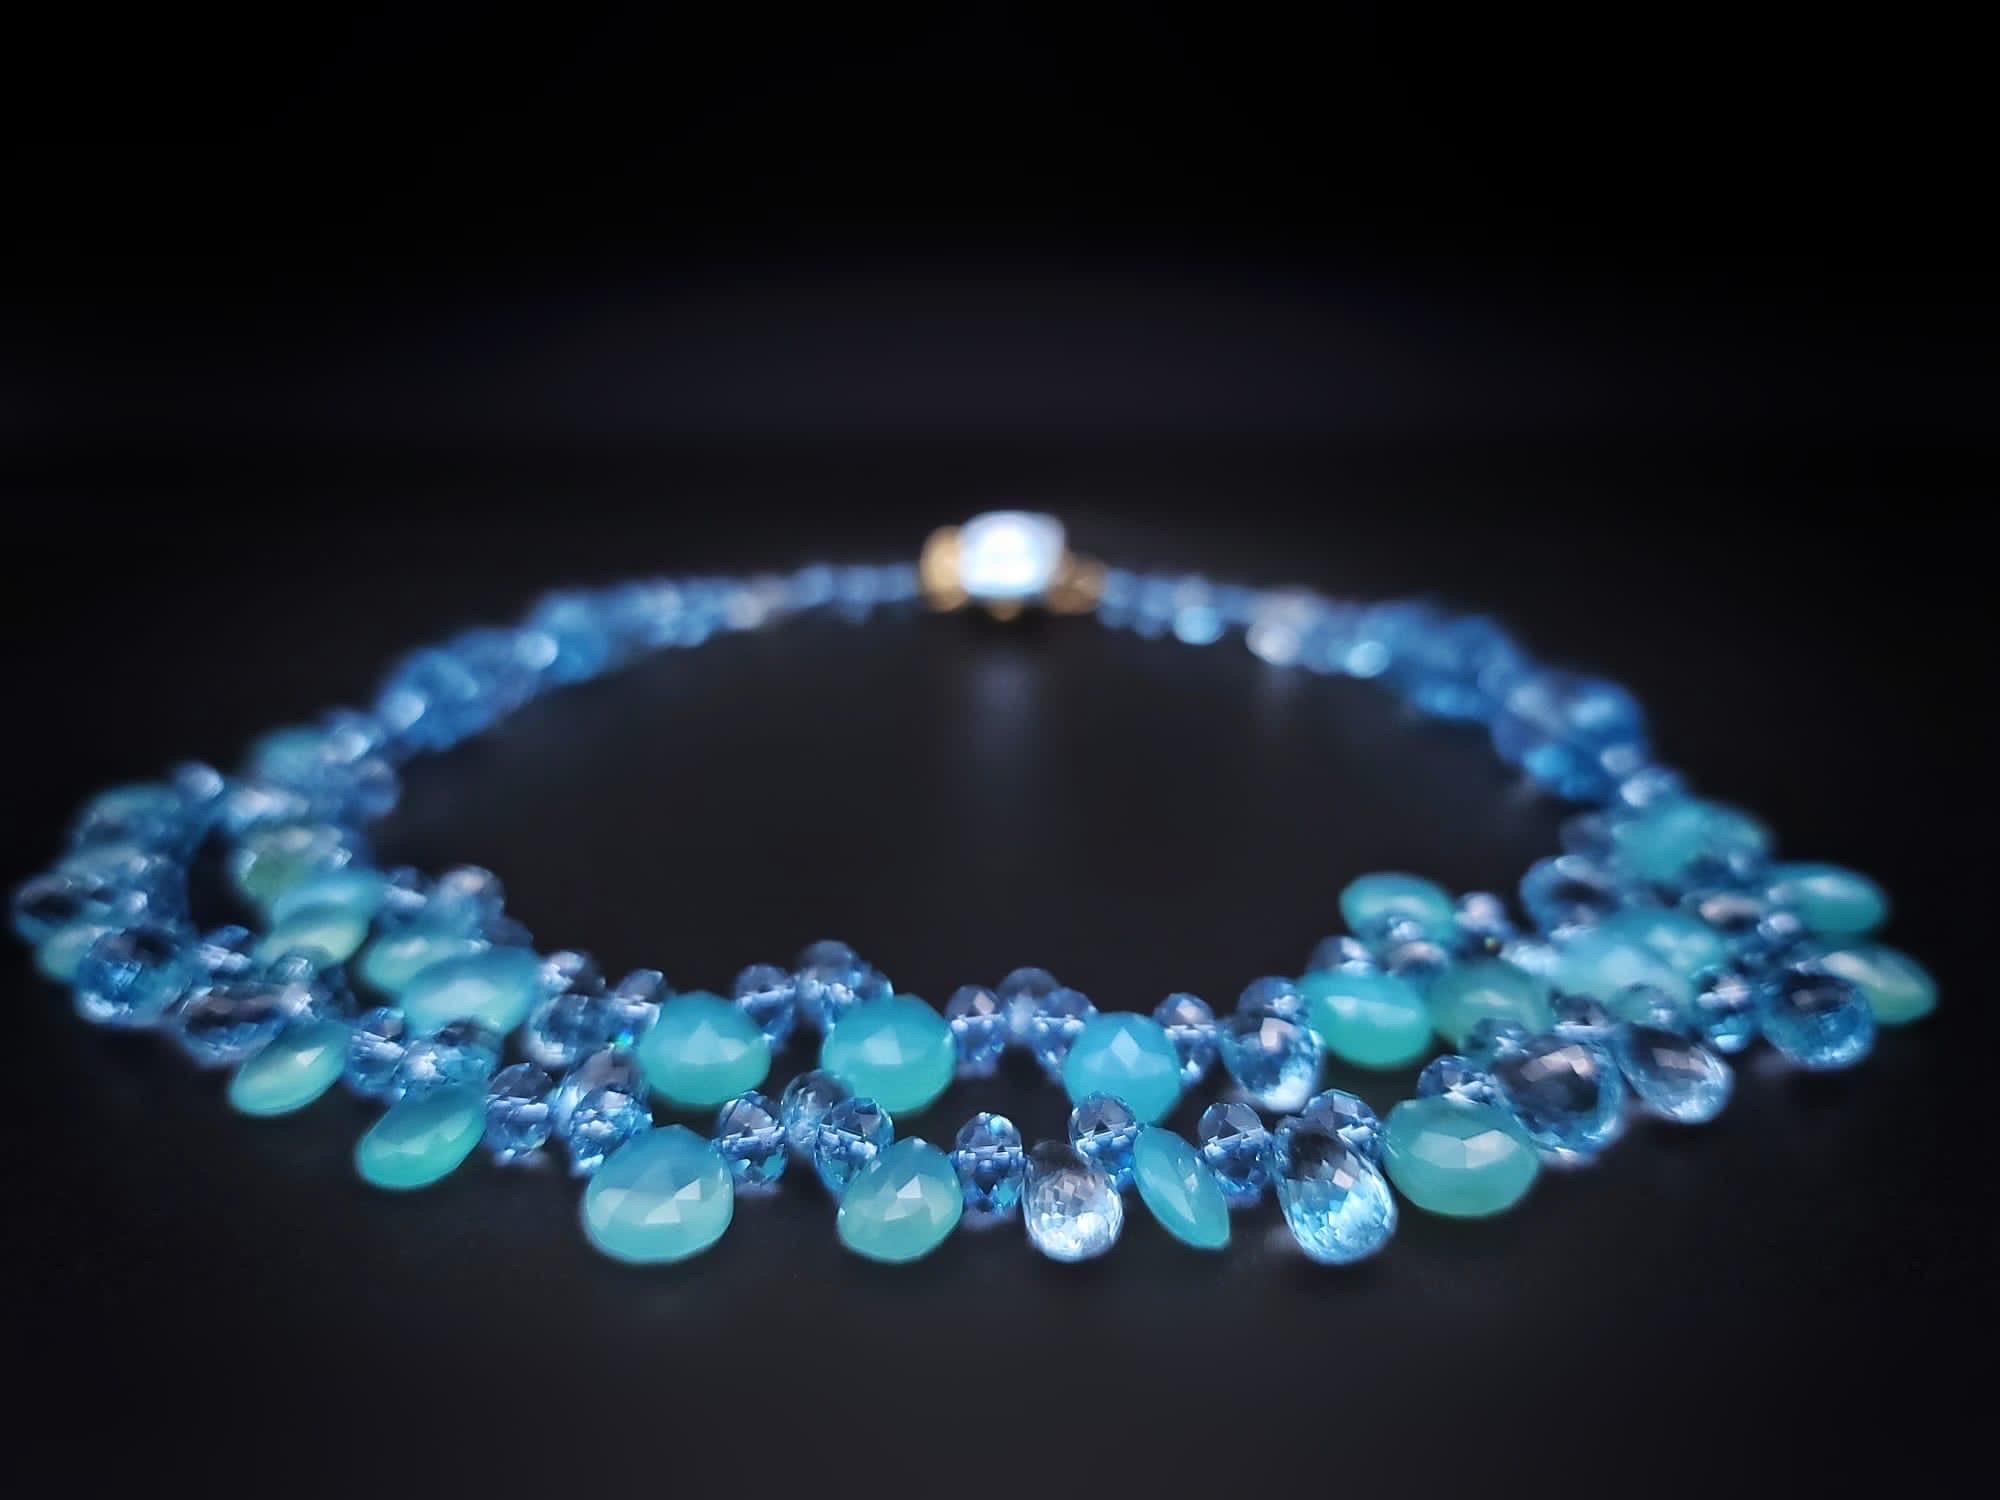 Mixed Cut A.Jeschel Stunning Blue topaz necklace. For Sale